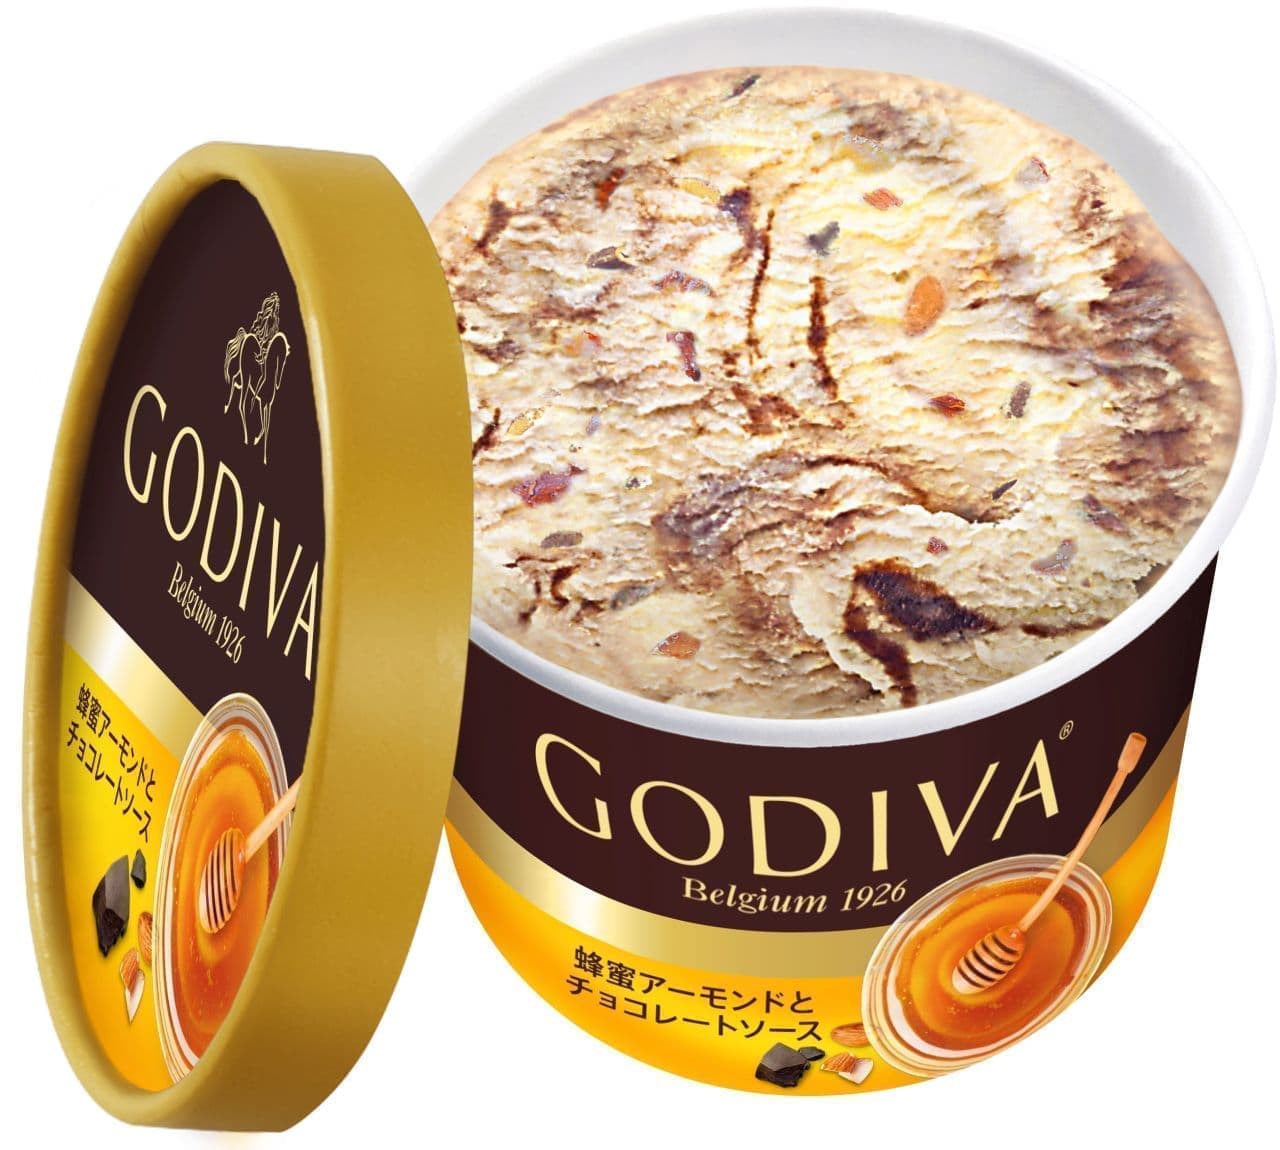 ゴディバ「蜂蜜アーモンドとチョコレートソース」